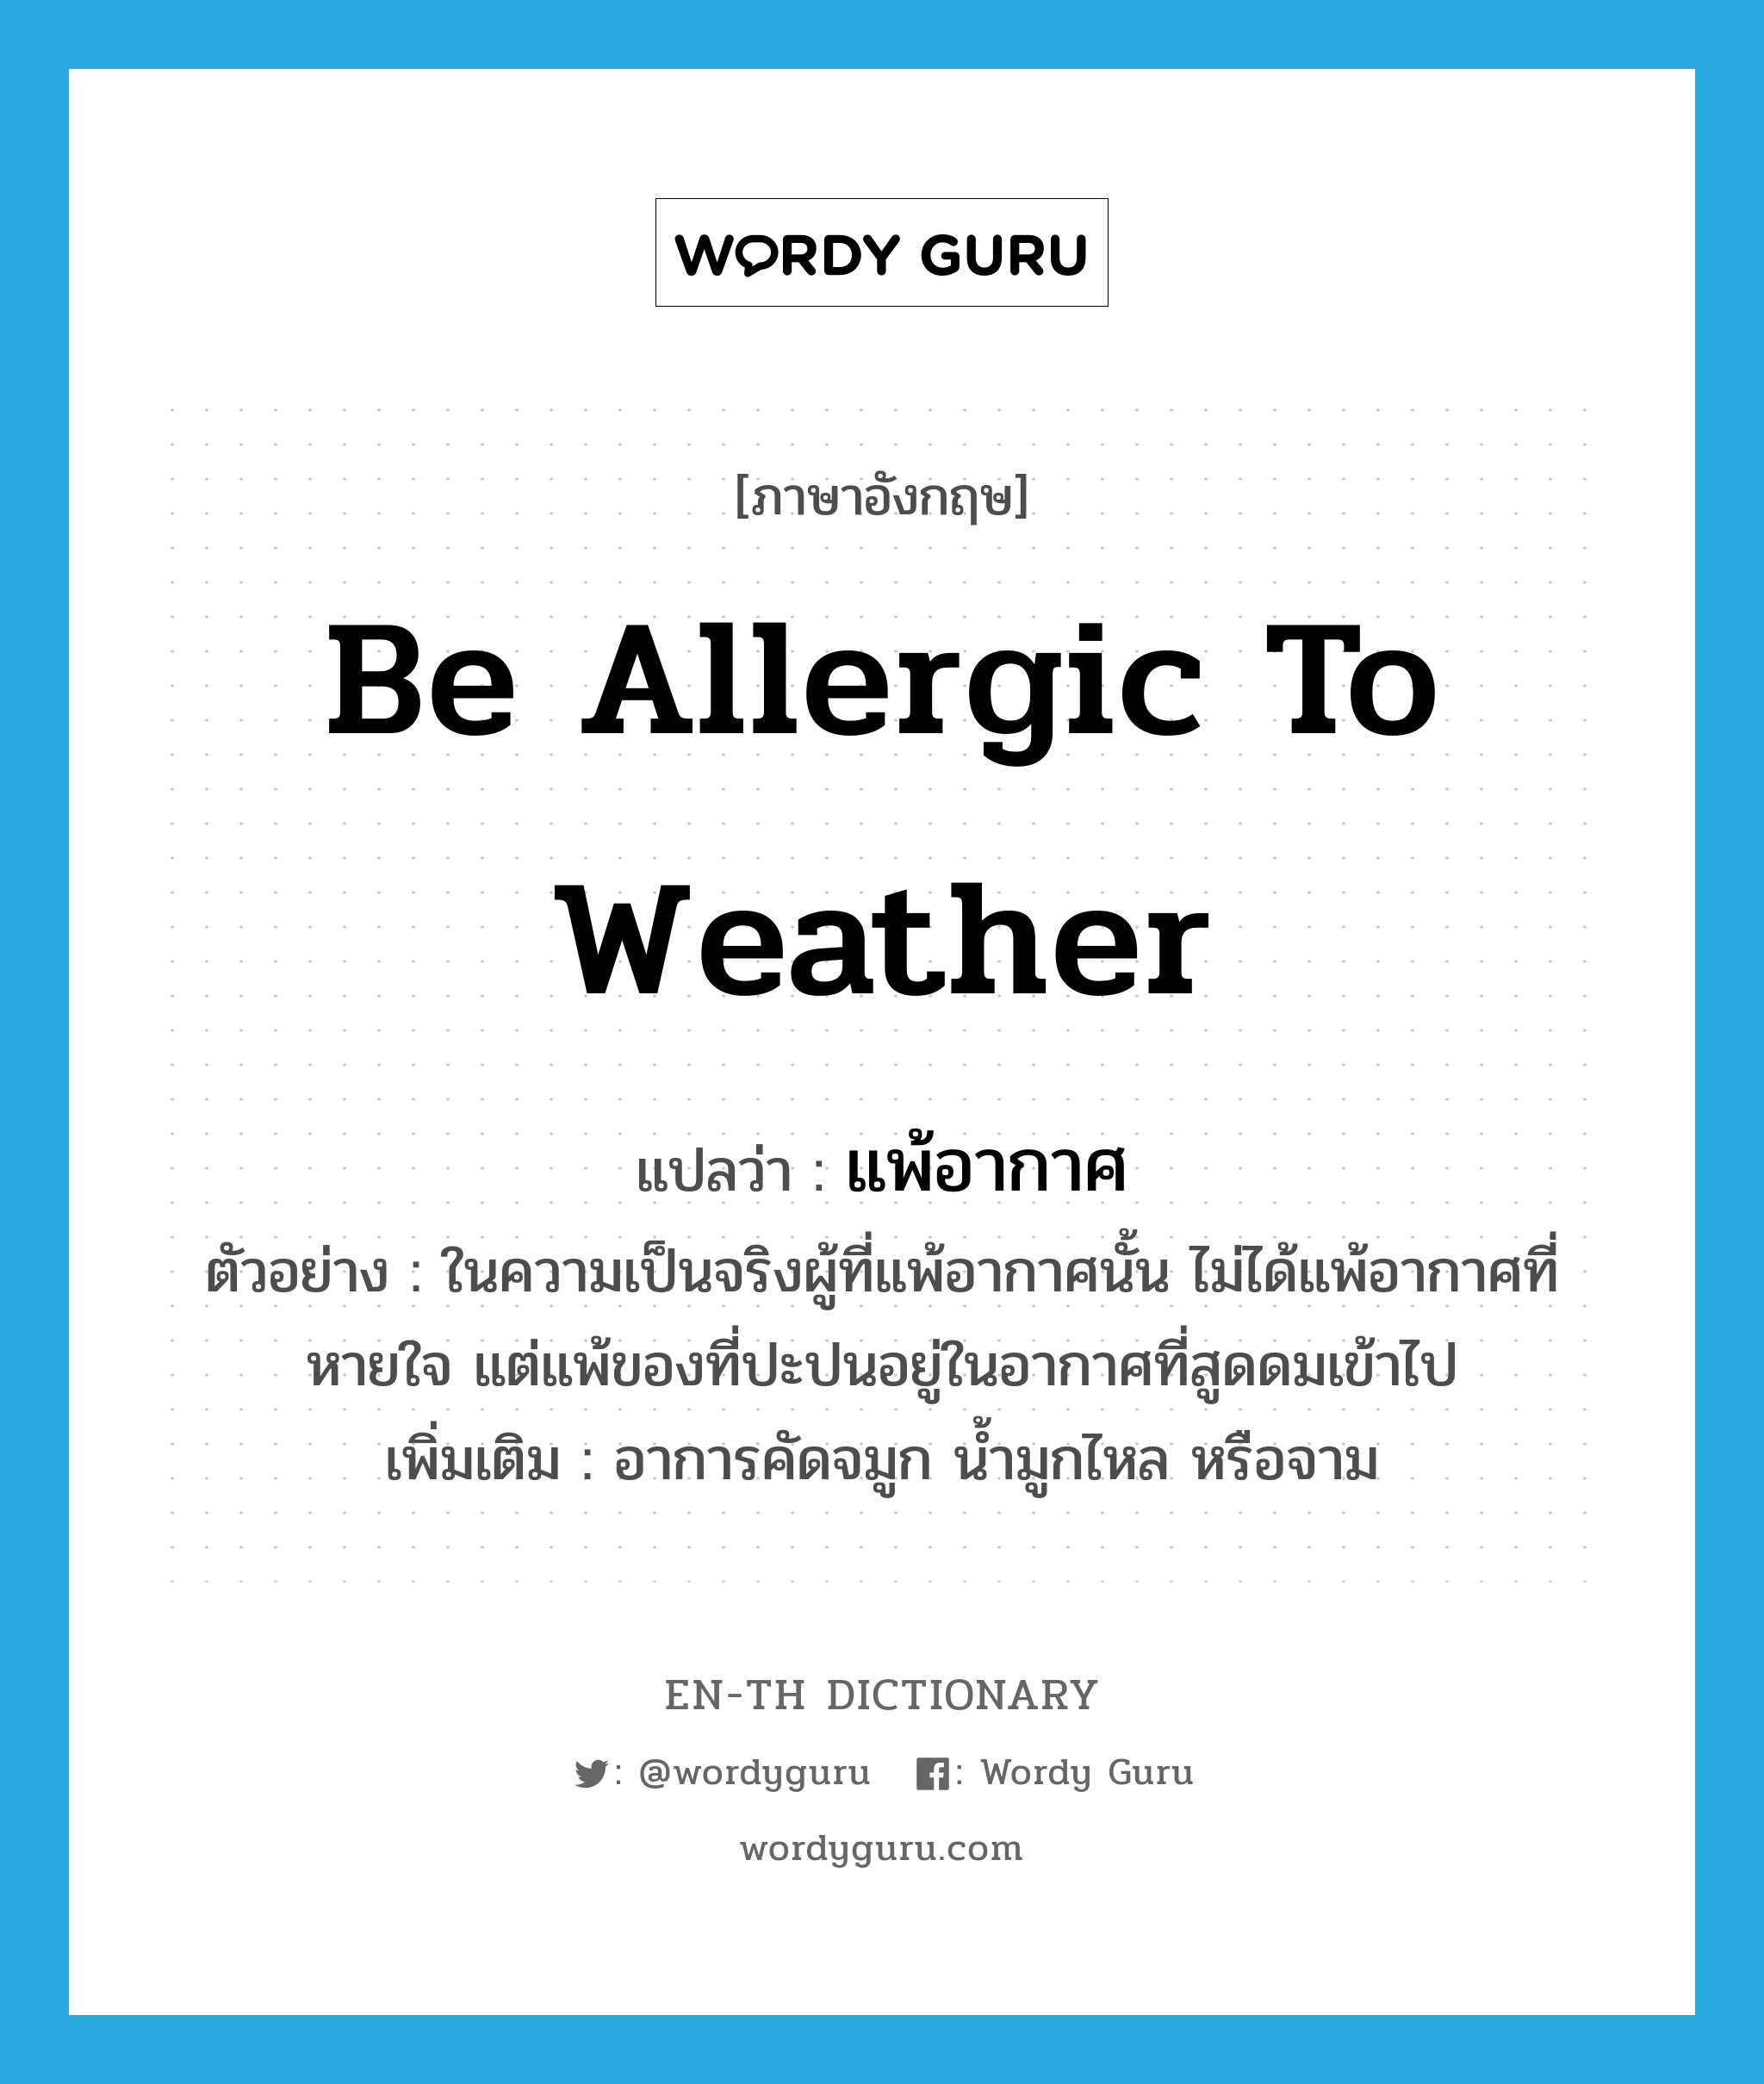 be allergic to weather แปลว่า?, คำศัพท์ภาษาอังกฤษ be allergic to weather แปลว่า แพ้อากาศ ประเภท V ตัวอย่าง ในความเป็นจริงผู้ที่แพ้อากาศนั้น ไม่ได้แพ้อากาศที่หายใจ แต่แพ้ของที่ปะปนอยู่ในอากาศที่สูดดมเข้าไป เพิ่มเติม อาการคัดจมูก น้ำมูกไหล หรือจาม หมวด V